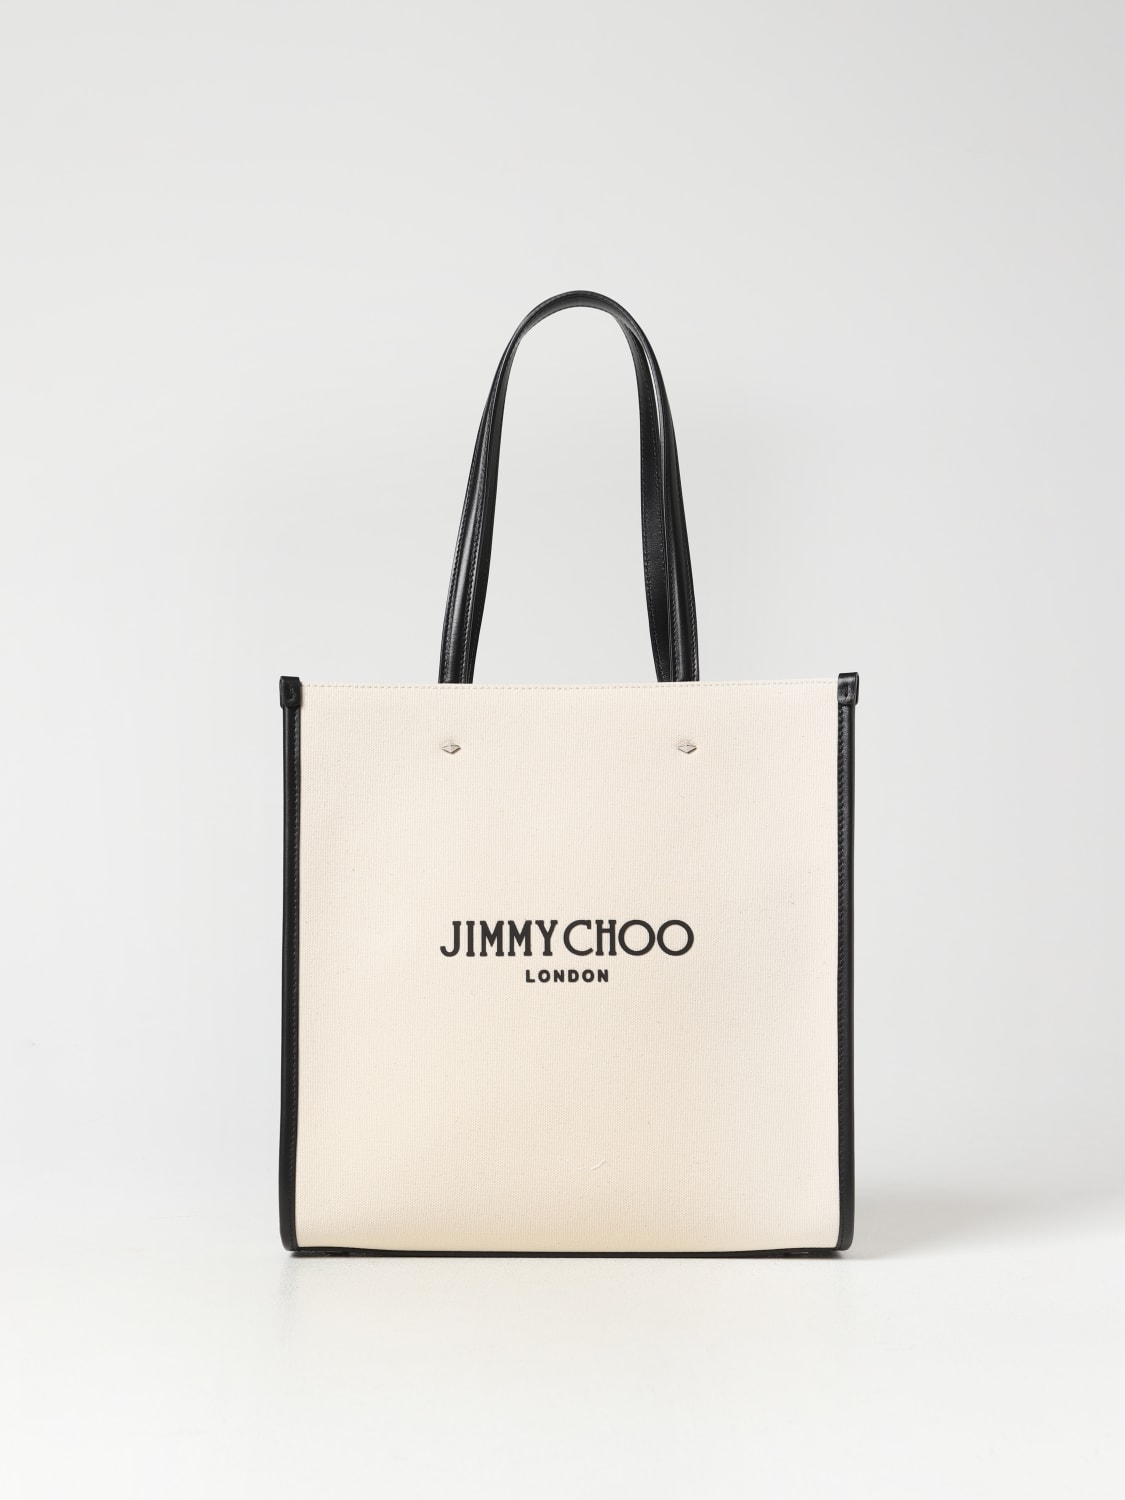 Jimmy Choo Women's Bags